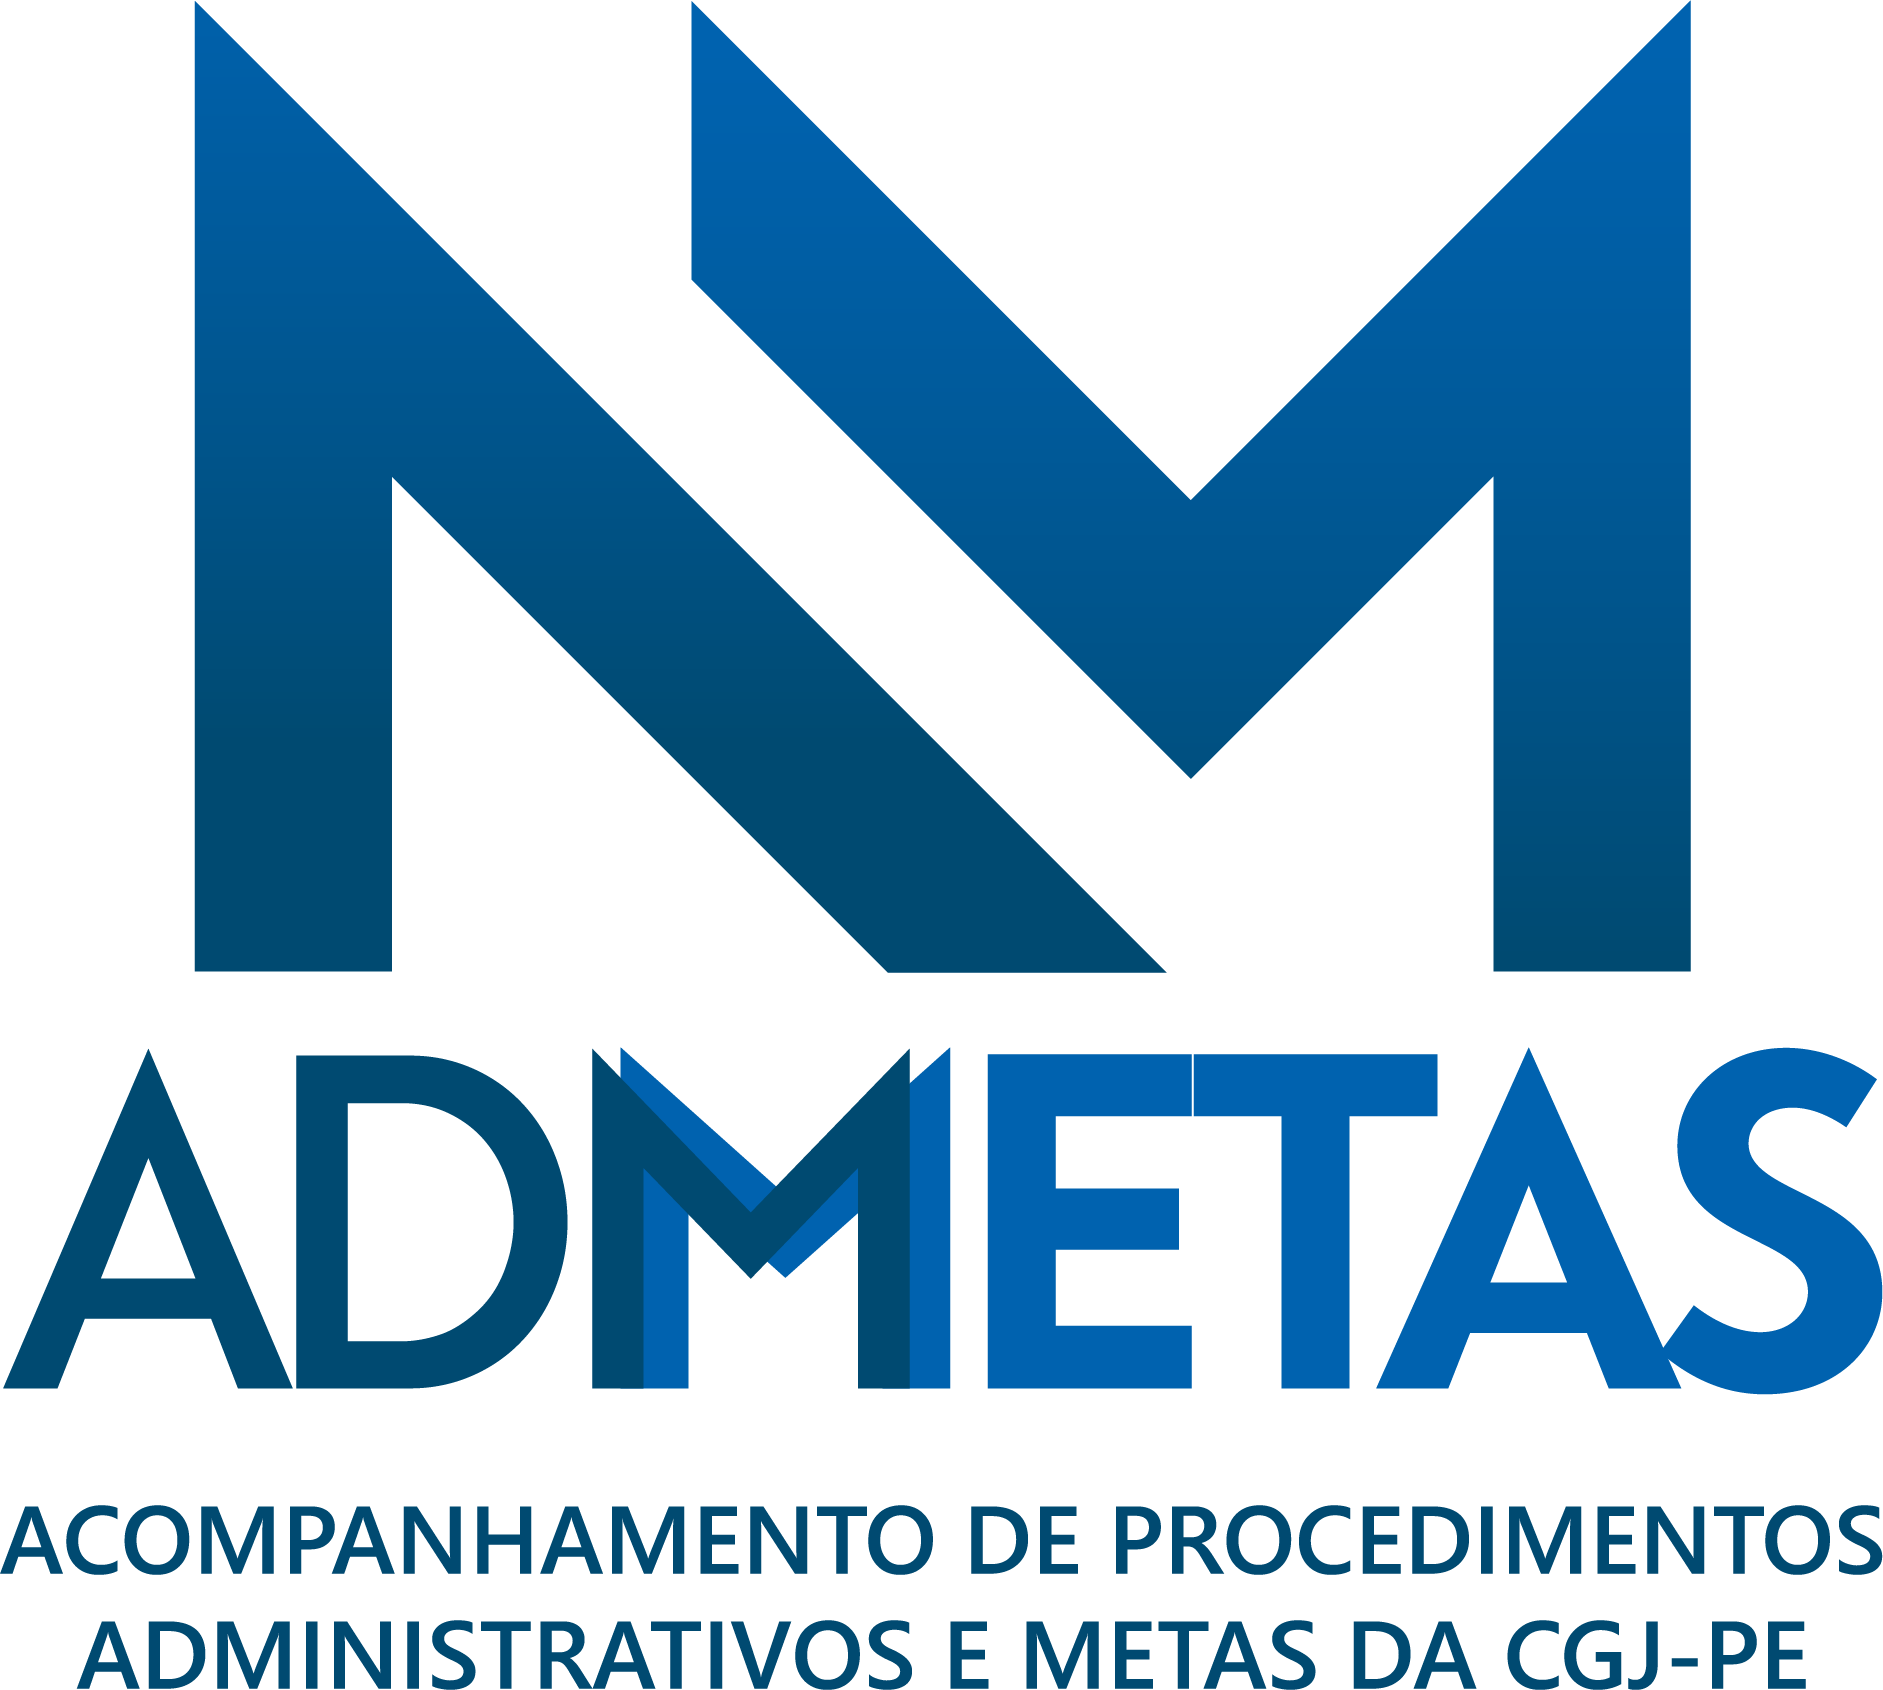 Logomarca do programa ADMetas em azul com o nome do sistema